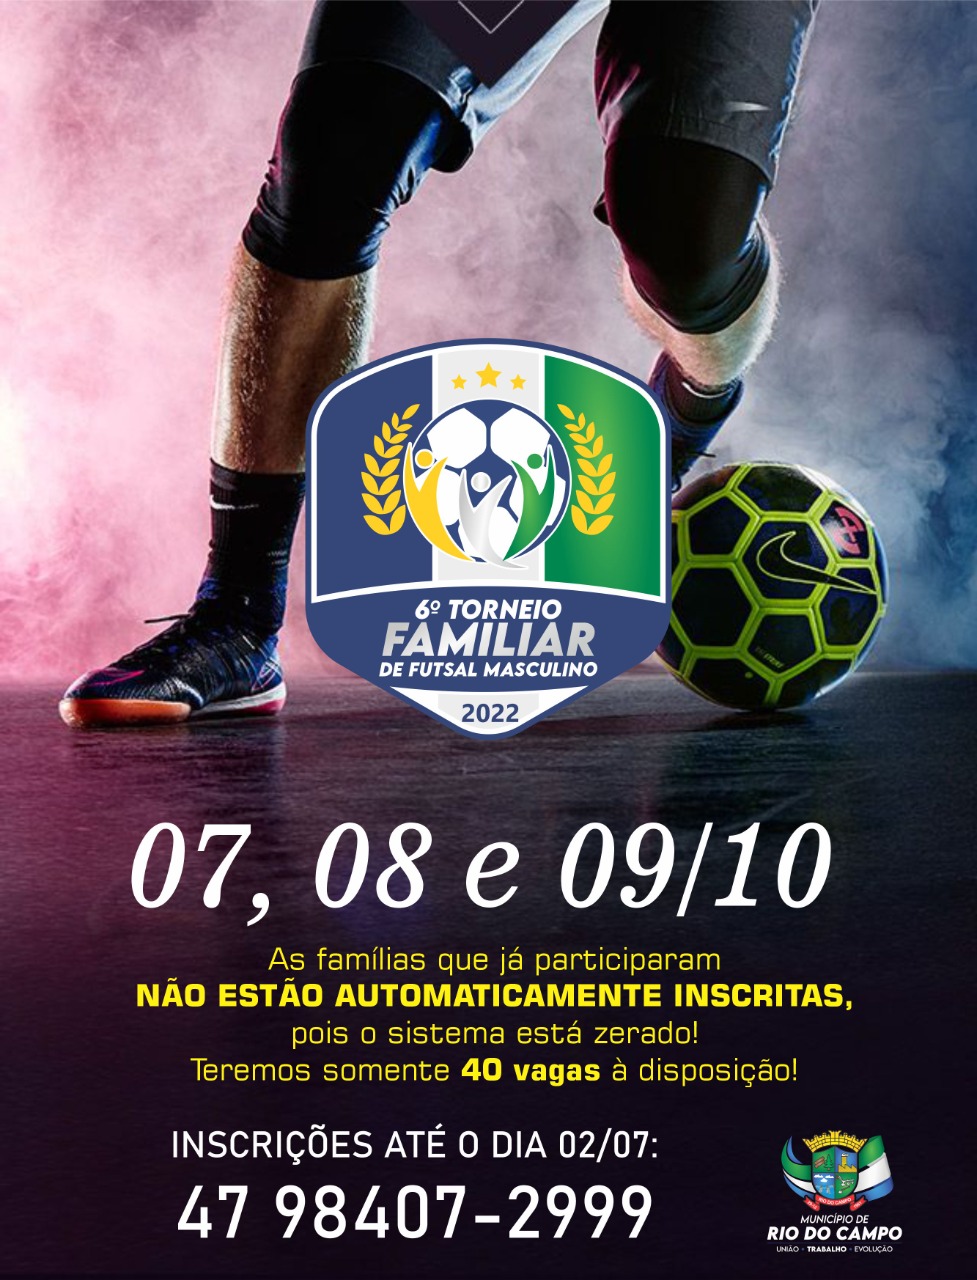 Inscrições abertas para o 6º Torneio Familiar de Futsal Masculino de Rio do Campo